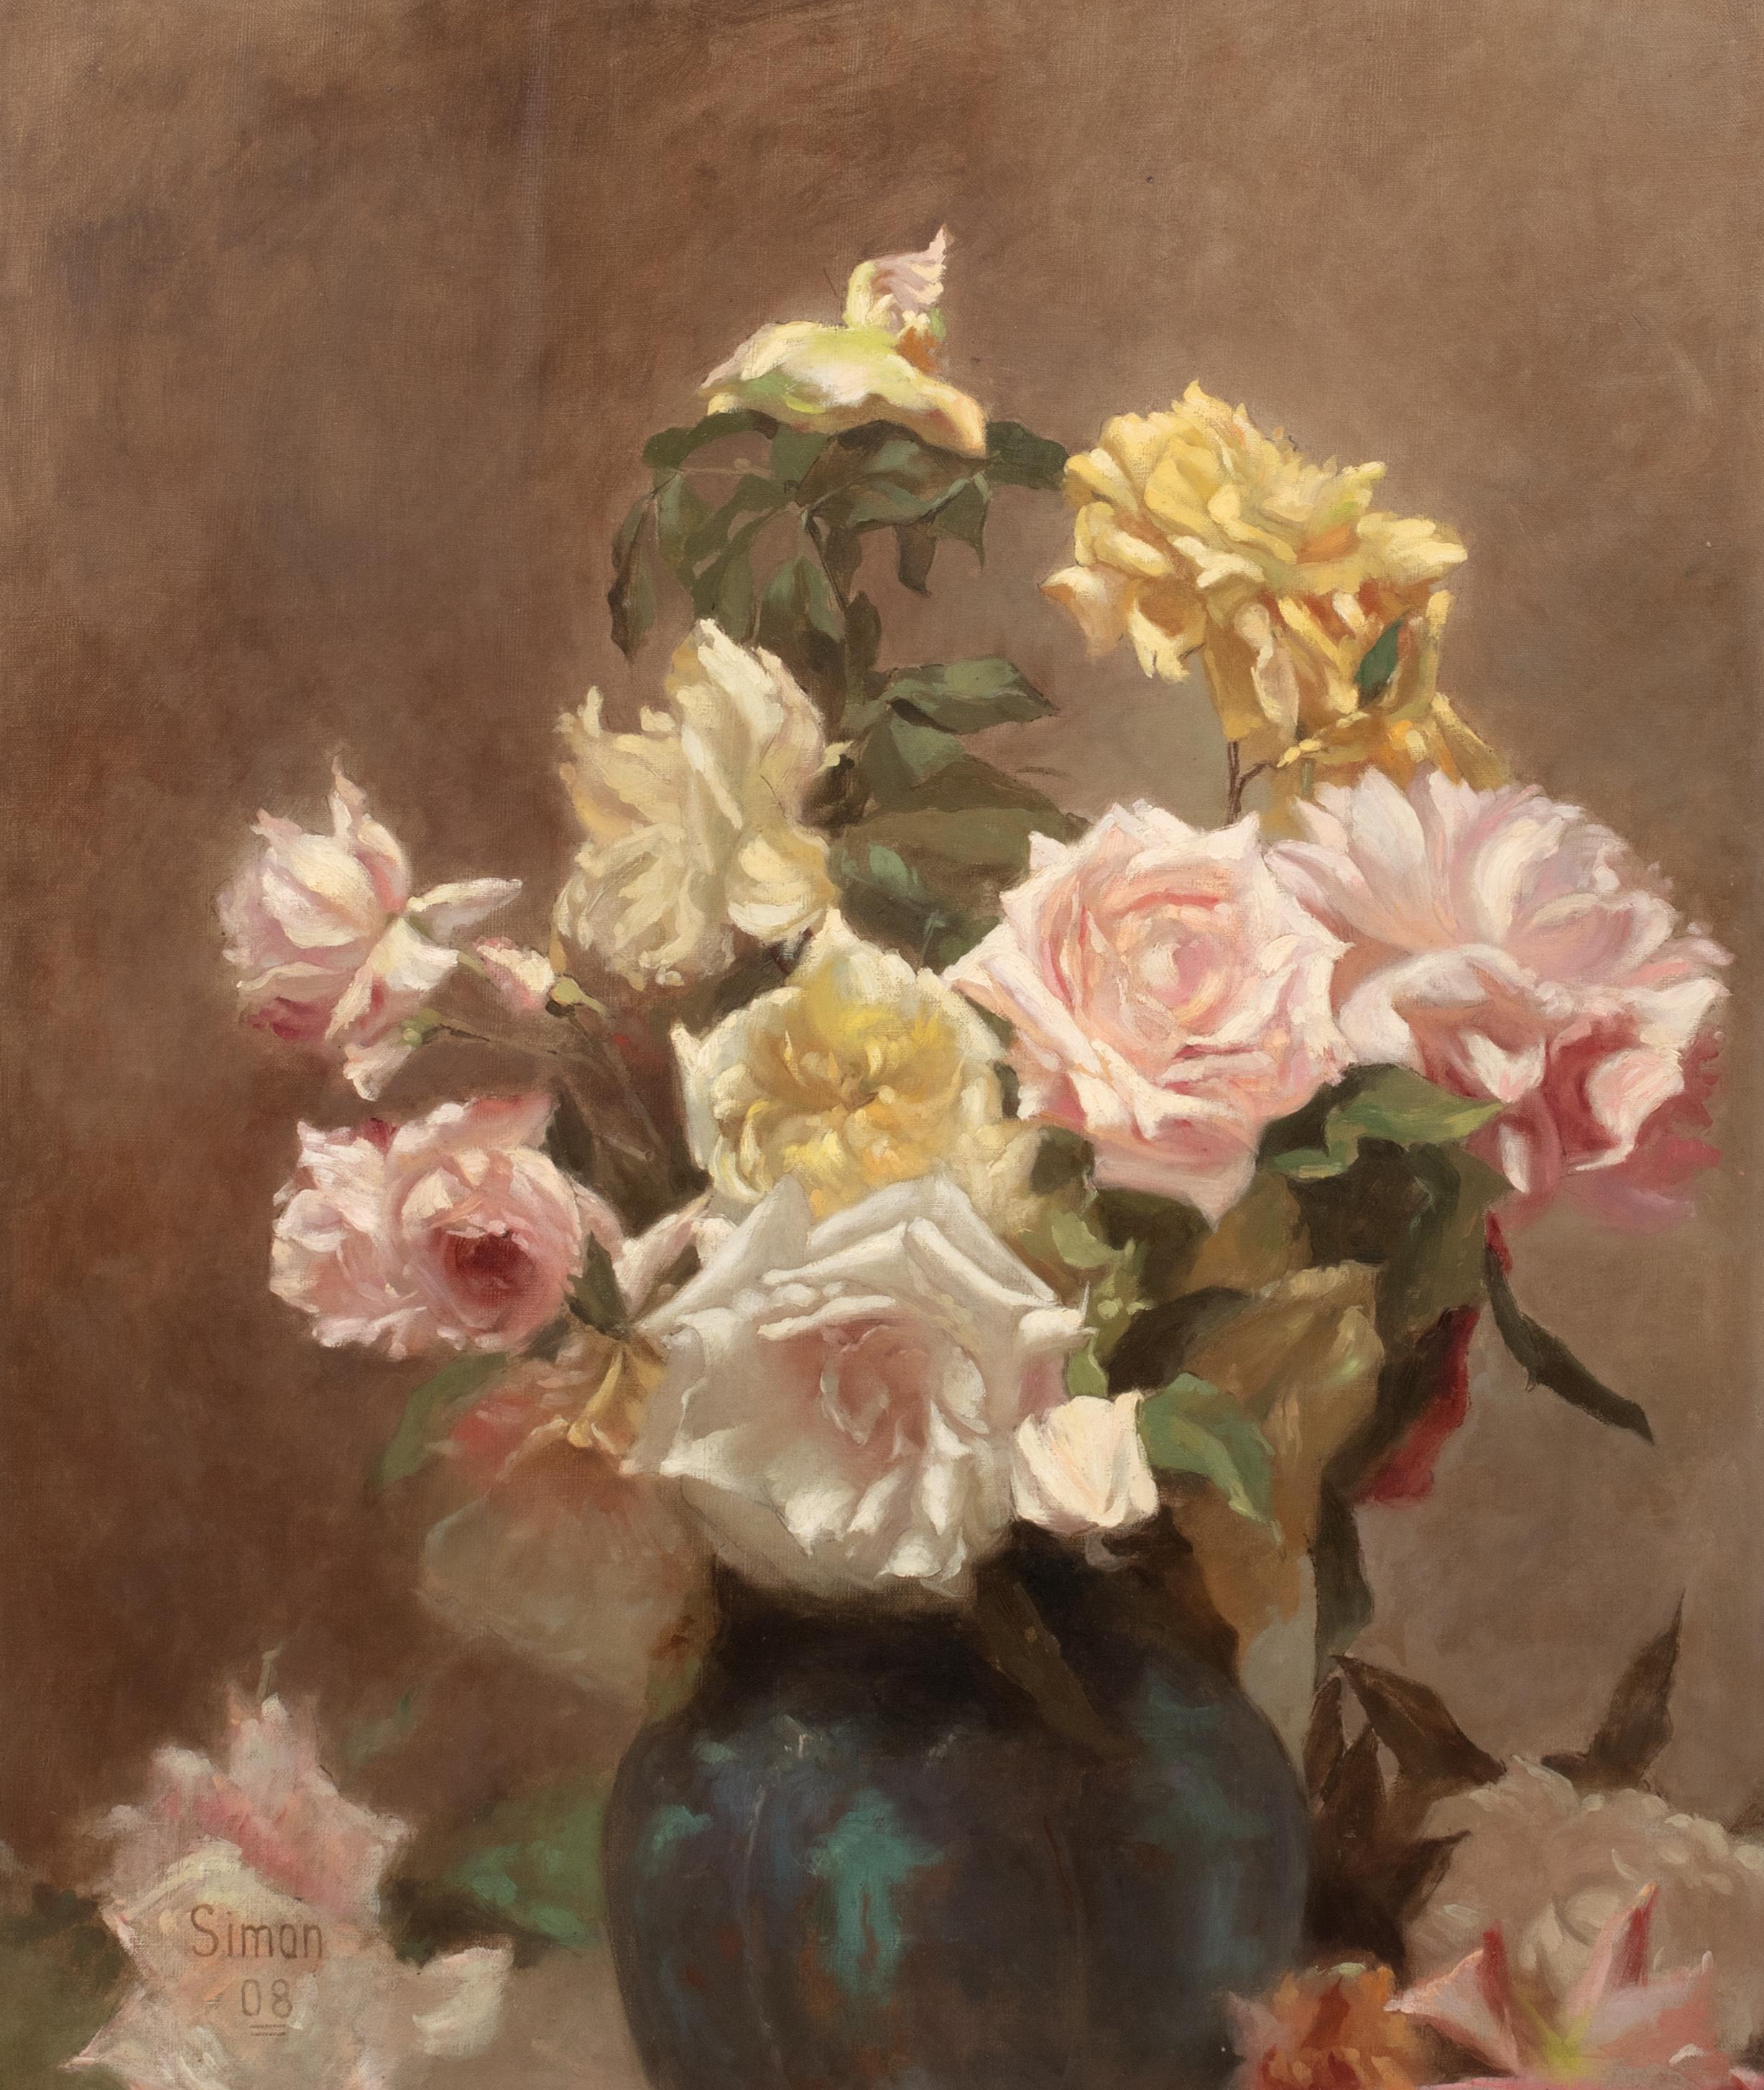 Nature morte aux roses d'été, datée de 1908 

par LUCIEN SIMON (1861-1905) ventes à $70,000

Grande nature morte impressionniste française de 1908 représentant des roses d'été jaunes, roses et blanches dans un vase, huile sur toile de Lucien Simon.